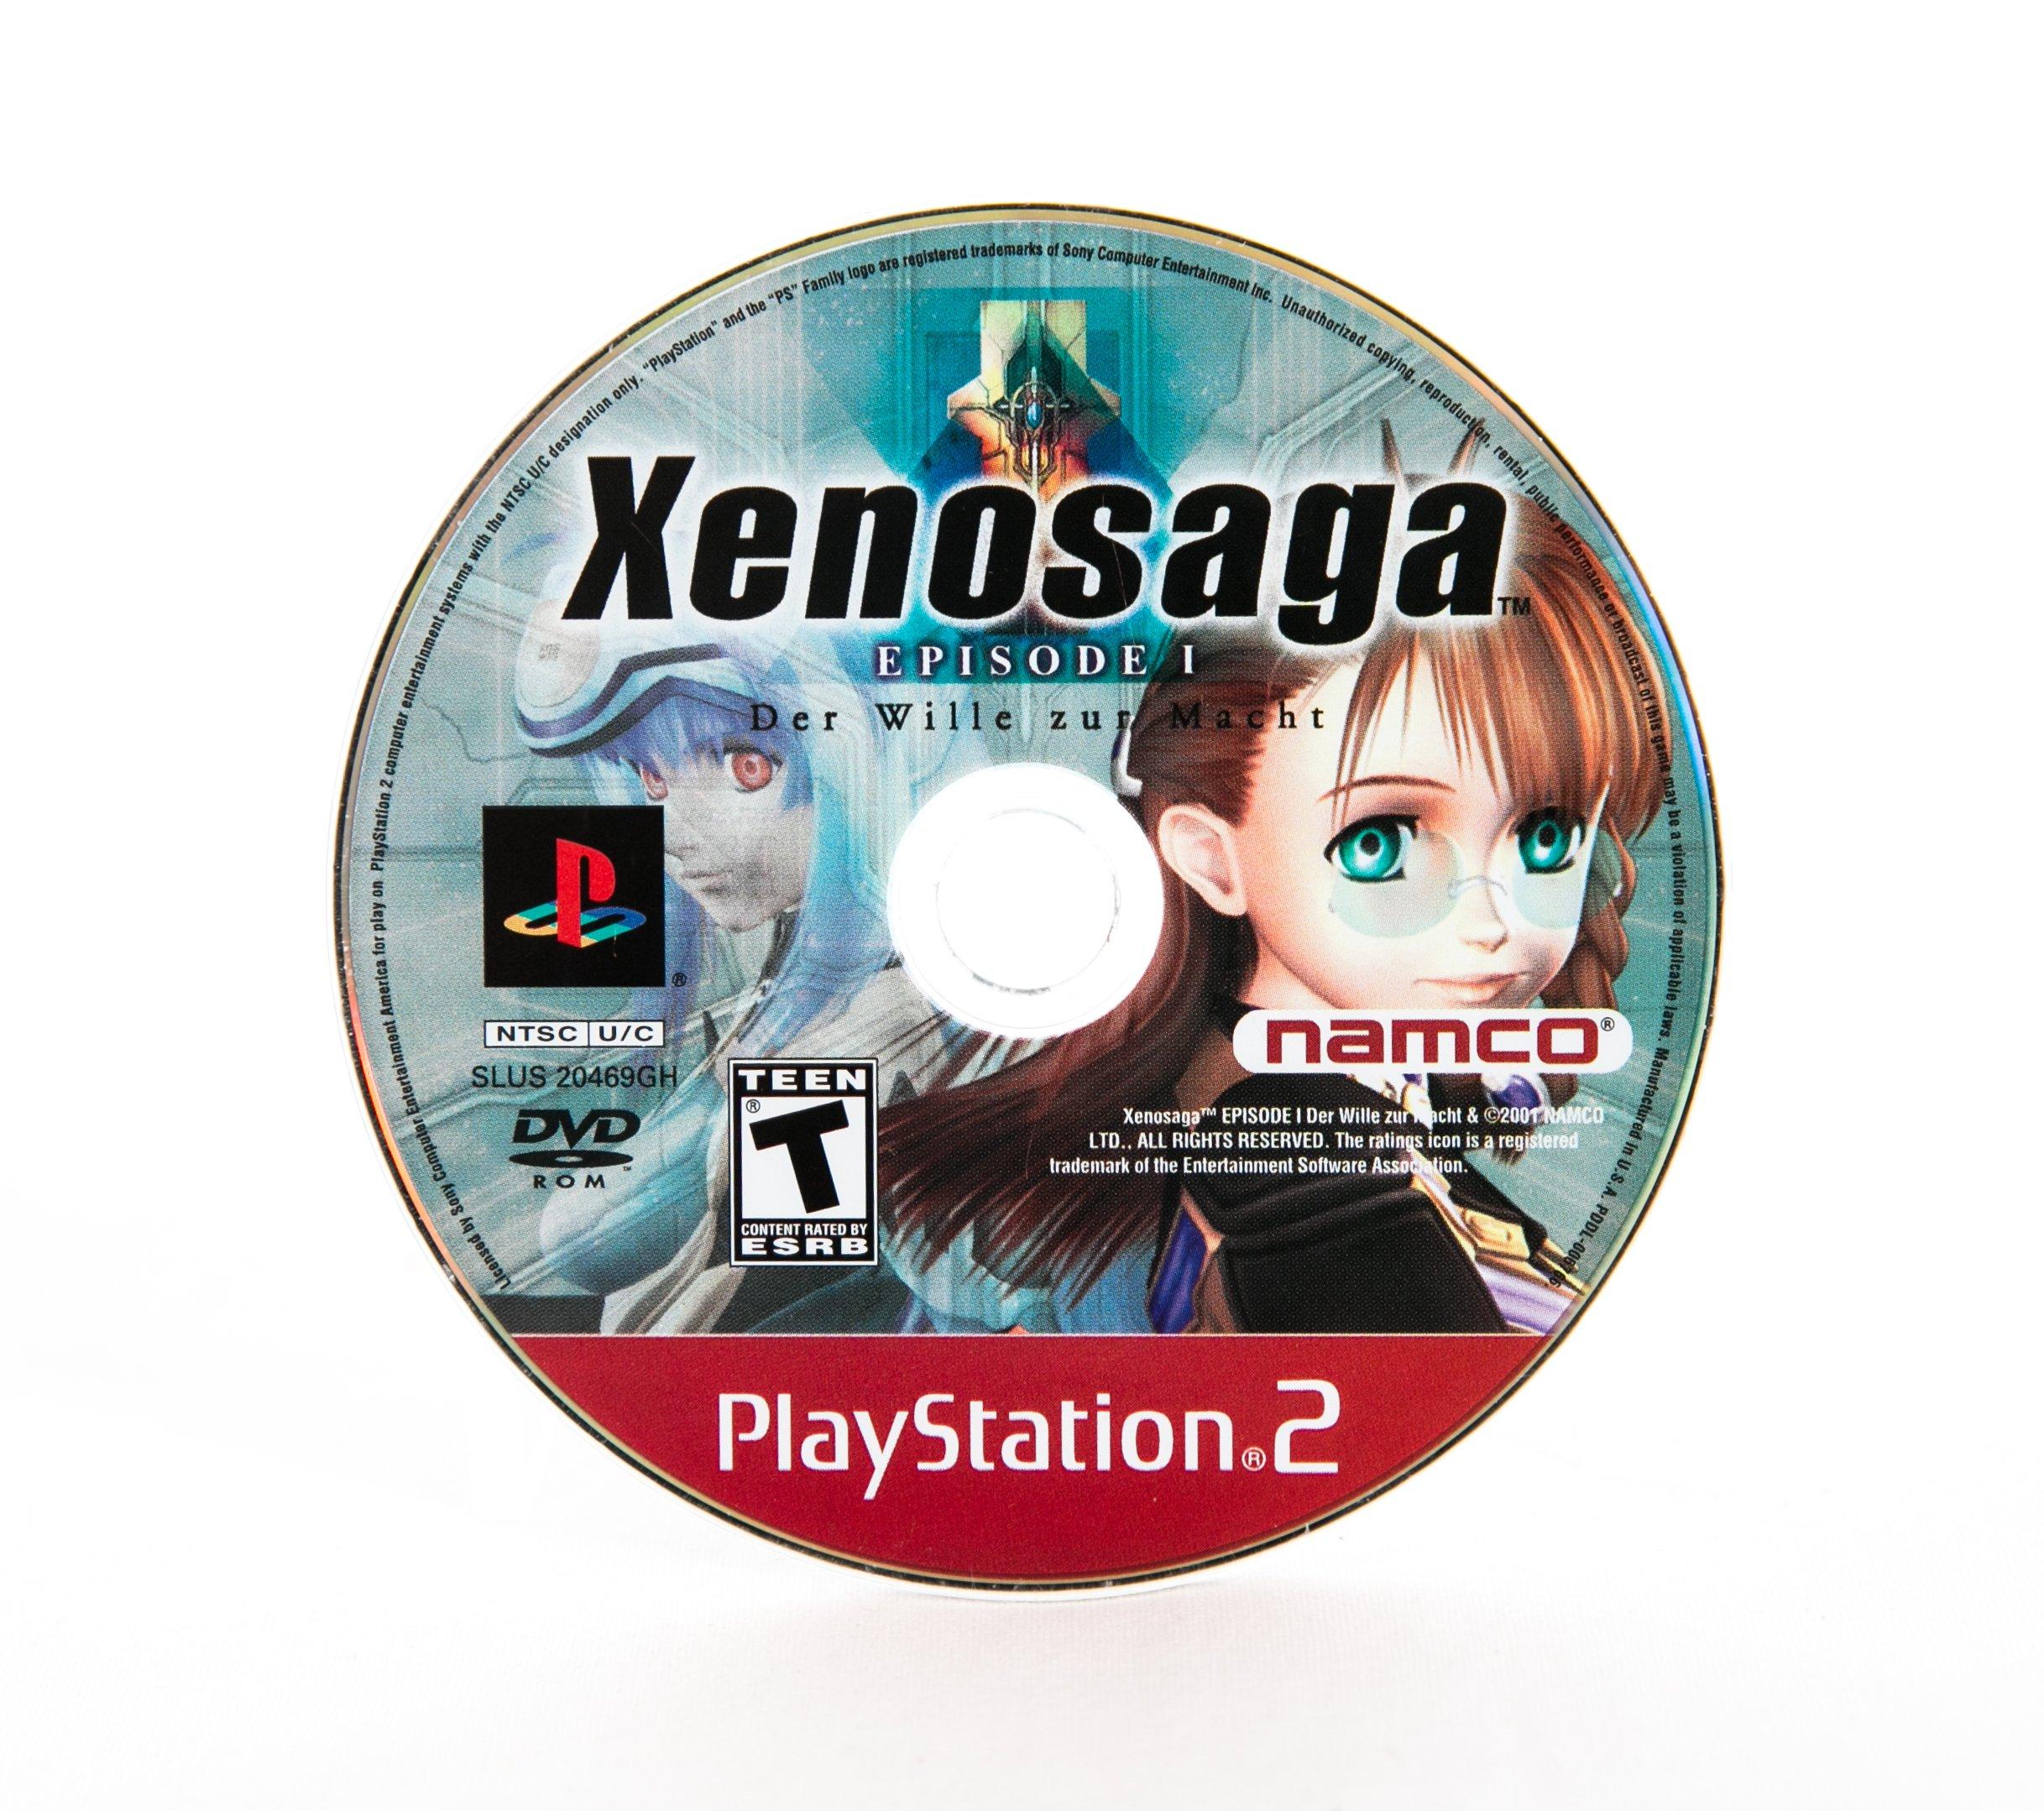 Xenosaga Episode I: Der Willie zur Macht - PlayStation 2